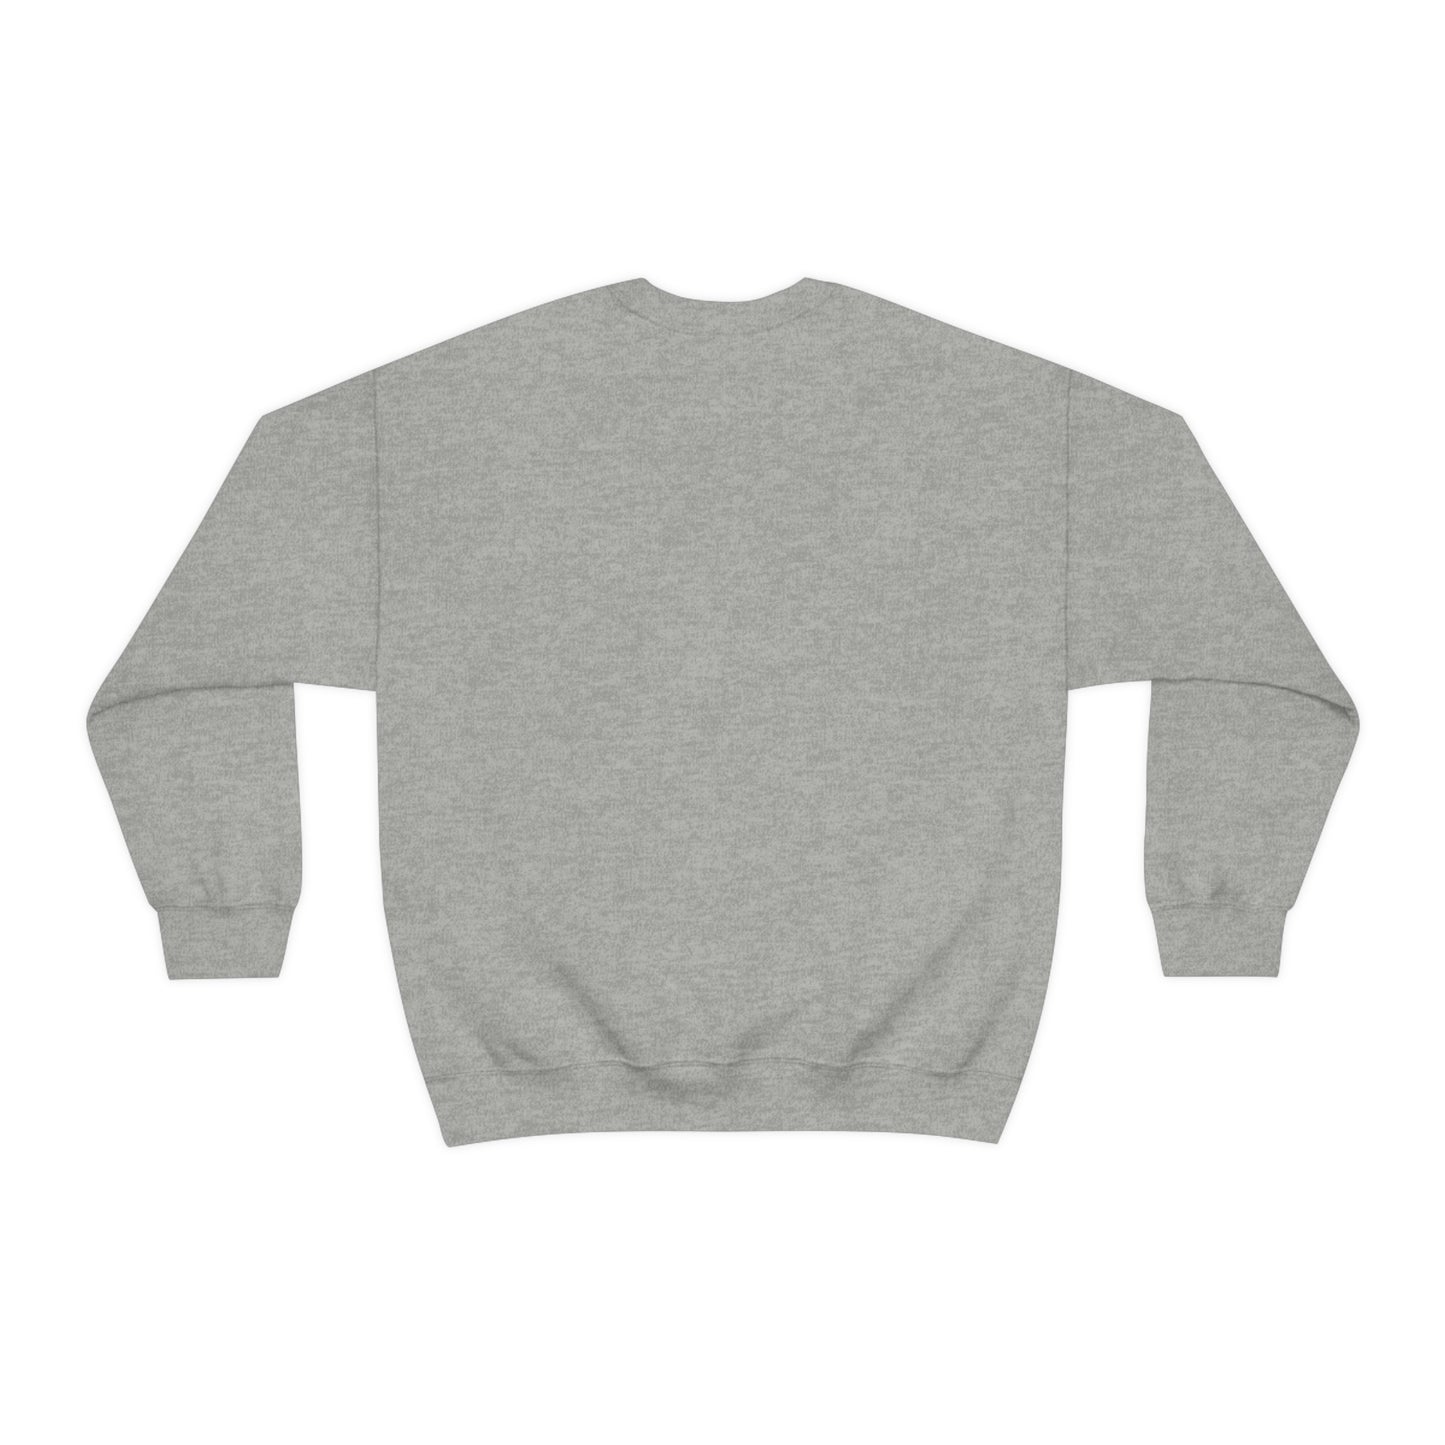 Make it smutty Crewneck Sweatshirt